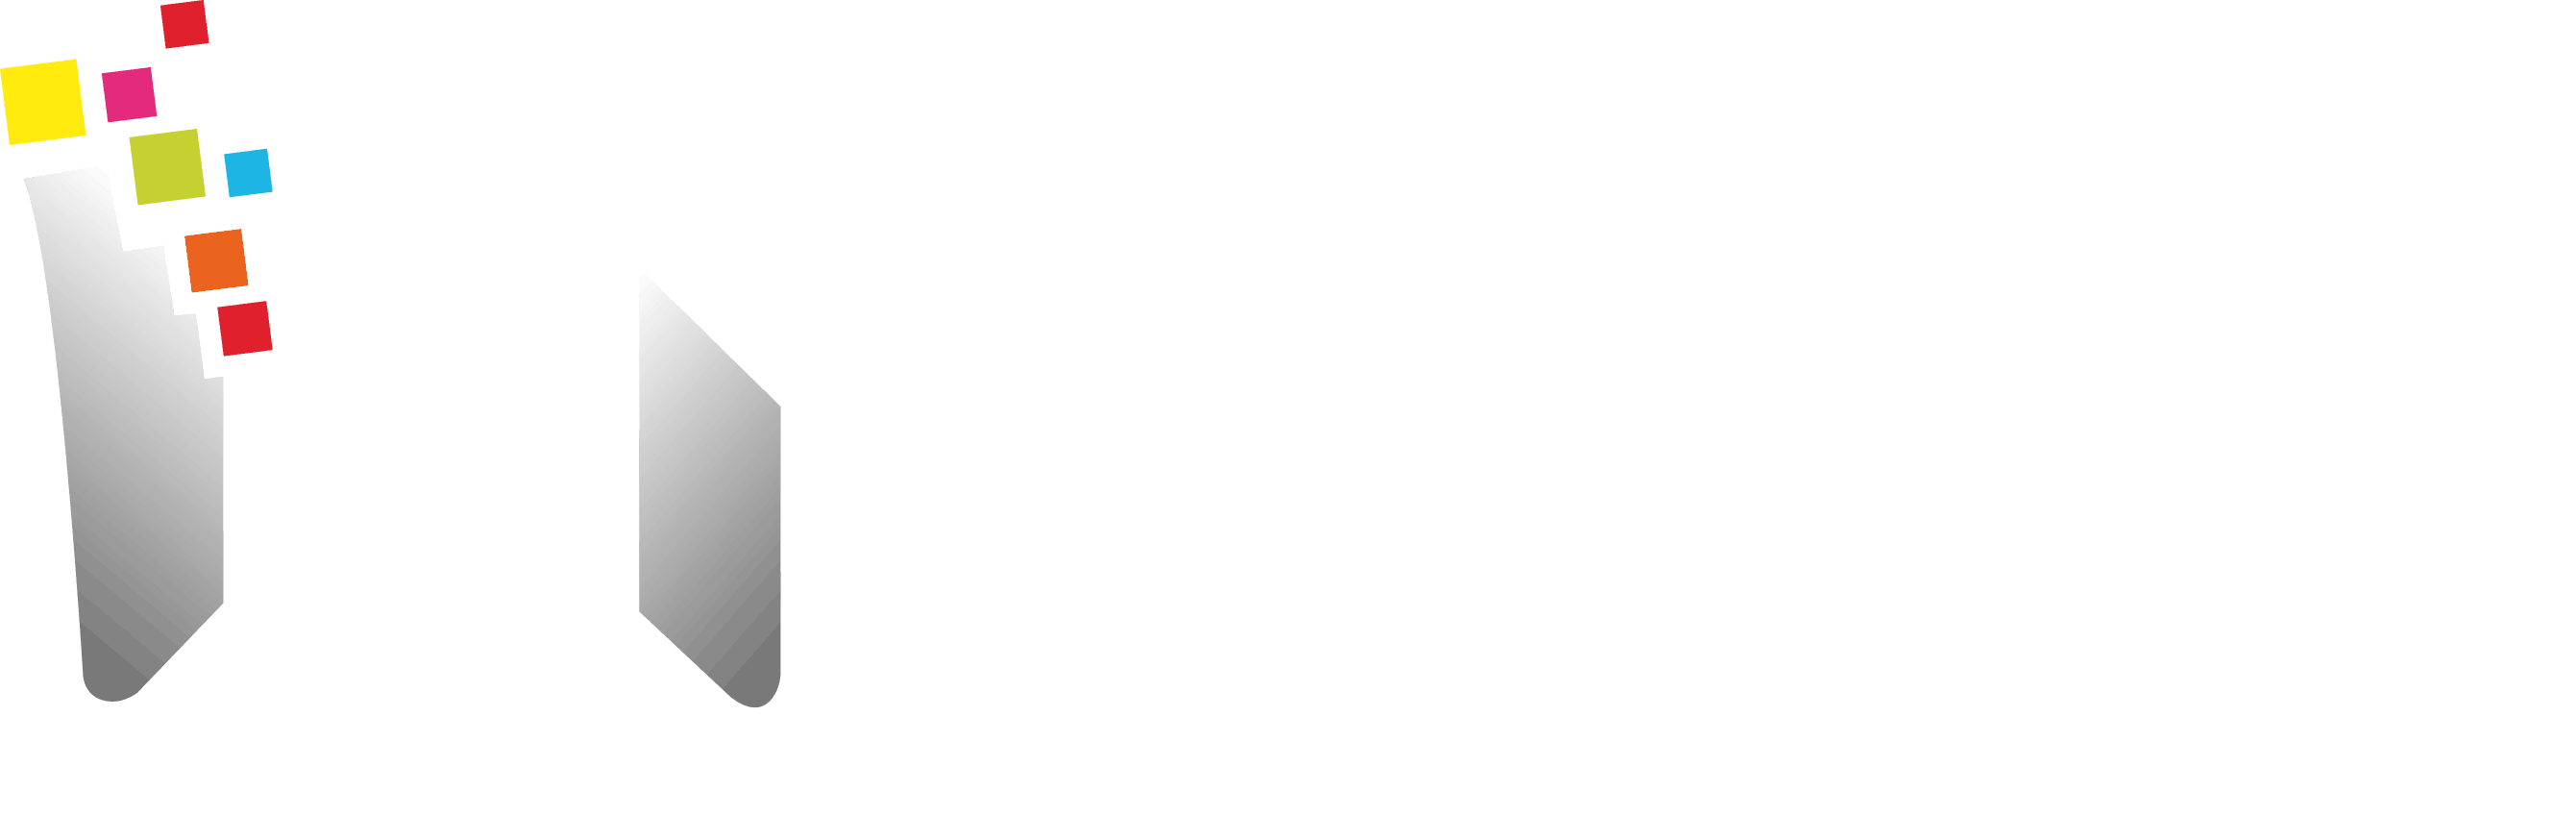 Webticos | Web | Design | Mobile